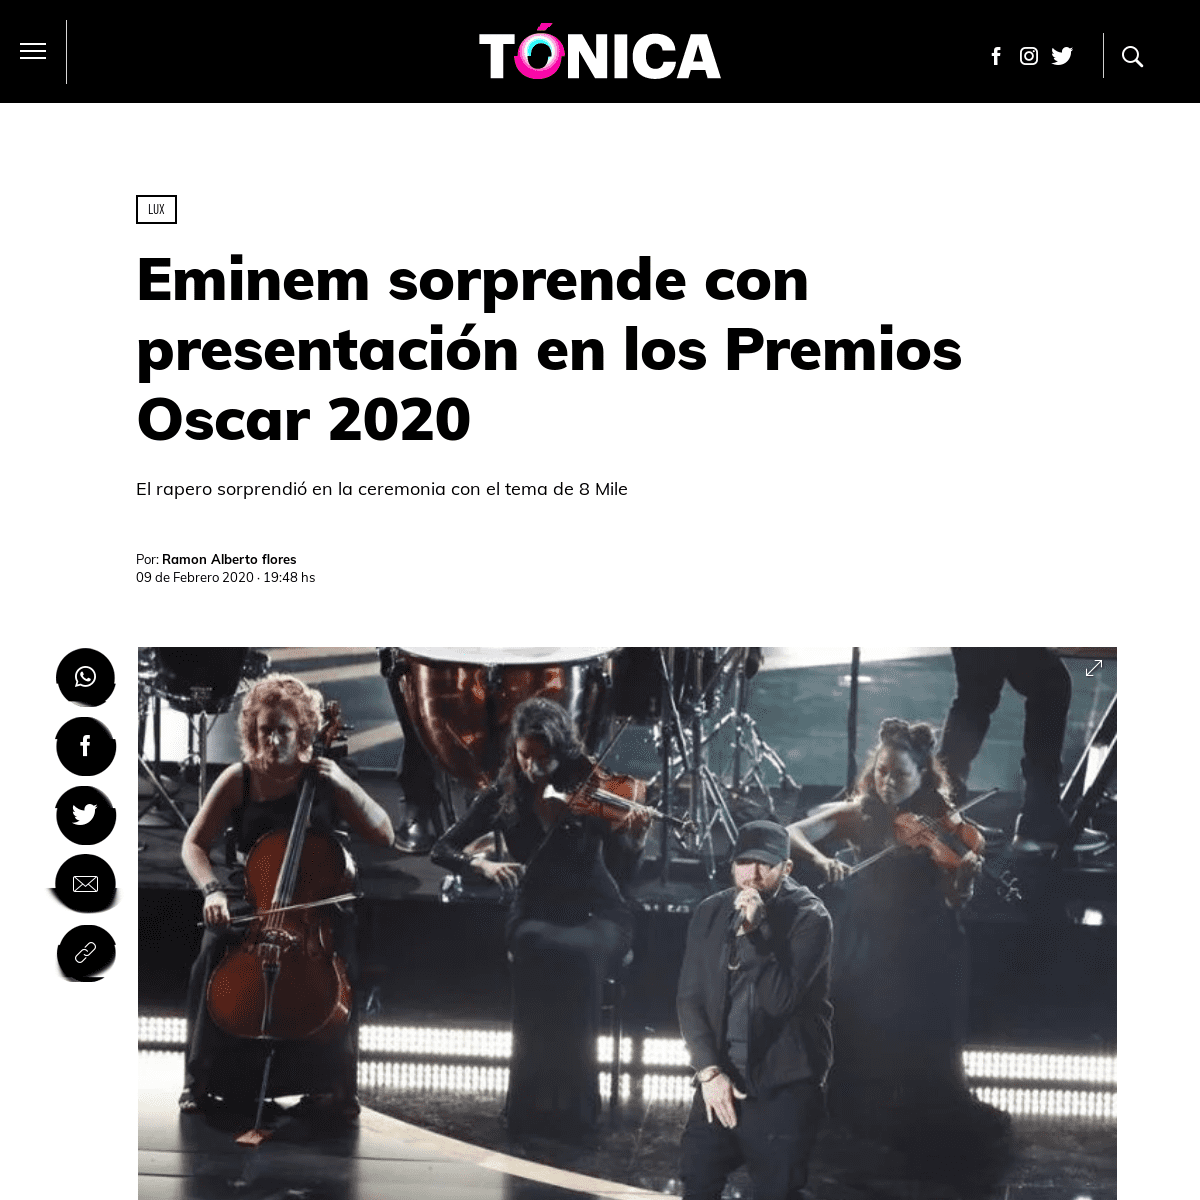 A complete backup of www.tonica.la/lux/Eminem-sorprende-en-los-Oscares-2020-20200209-0017.html